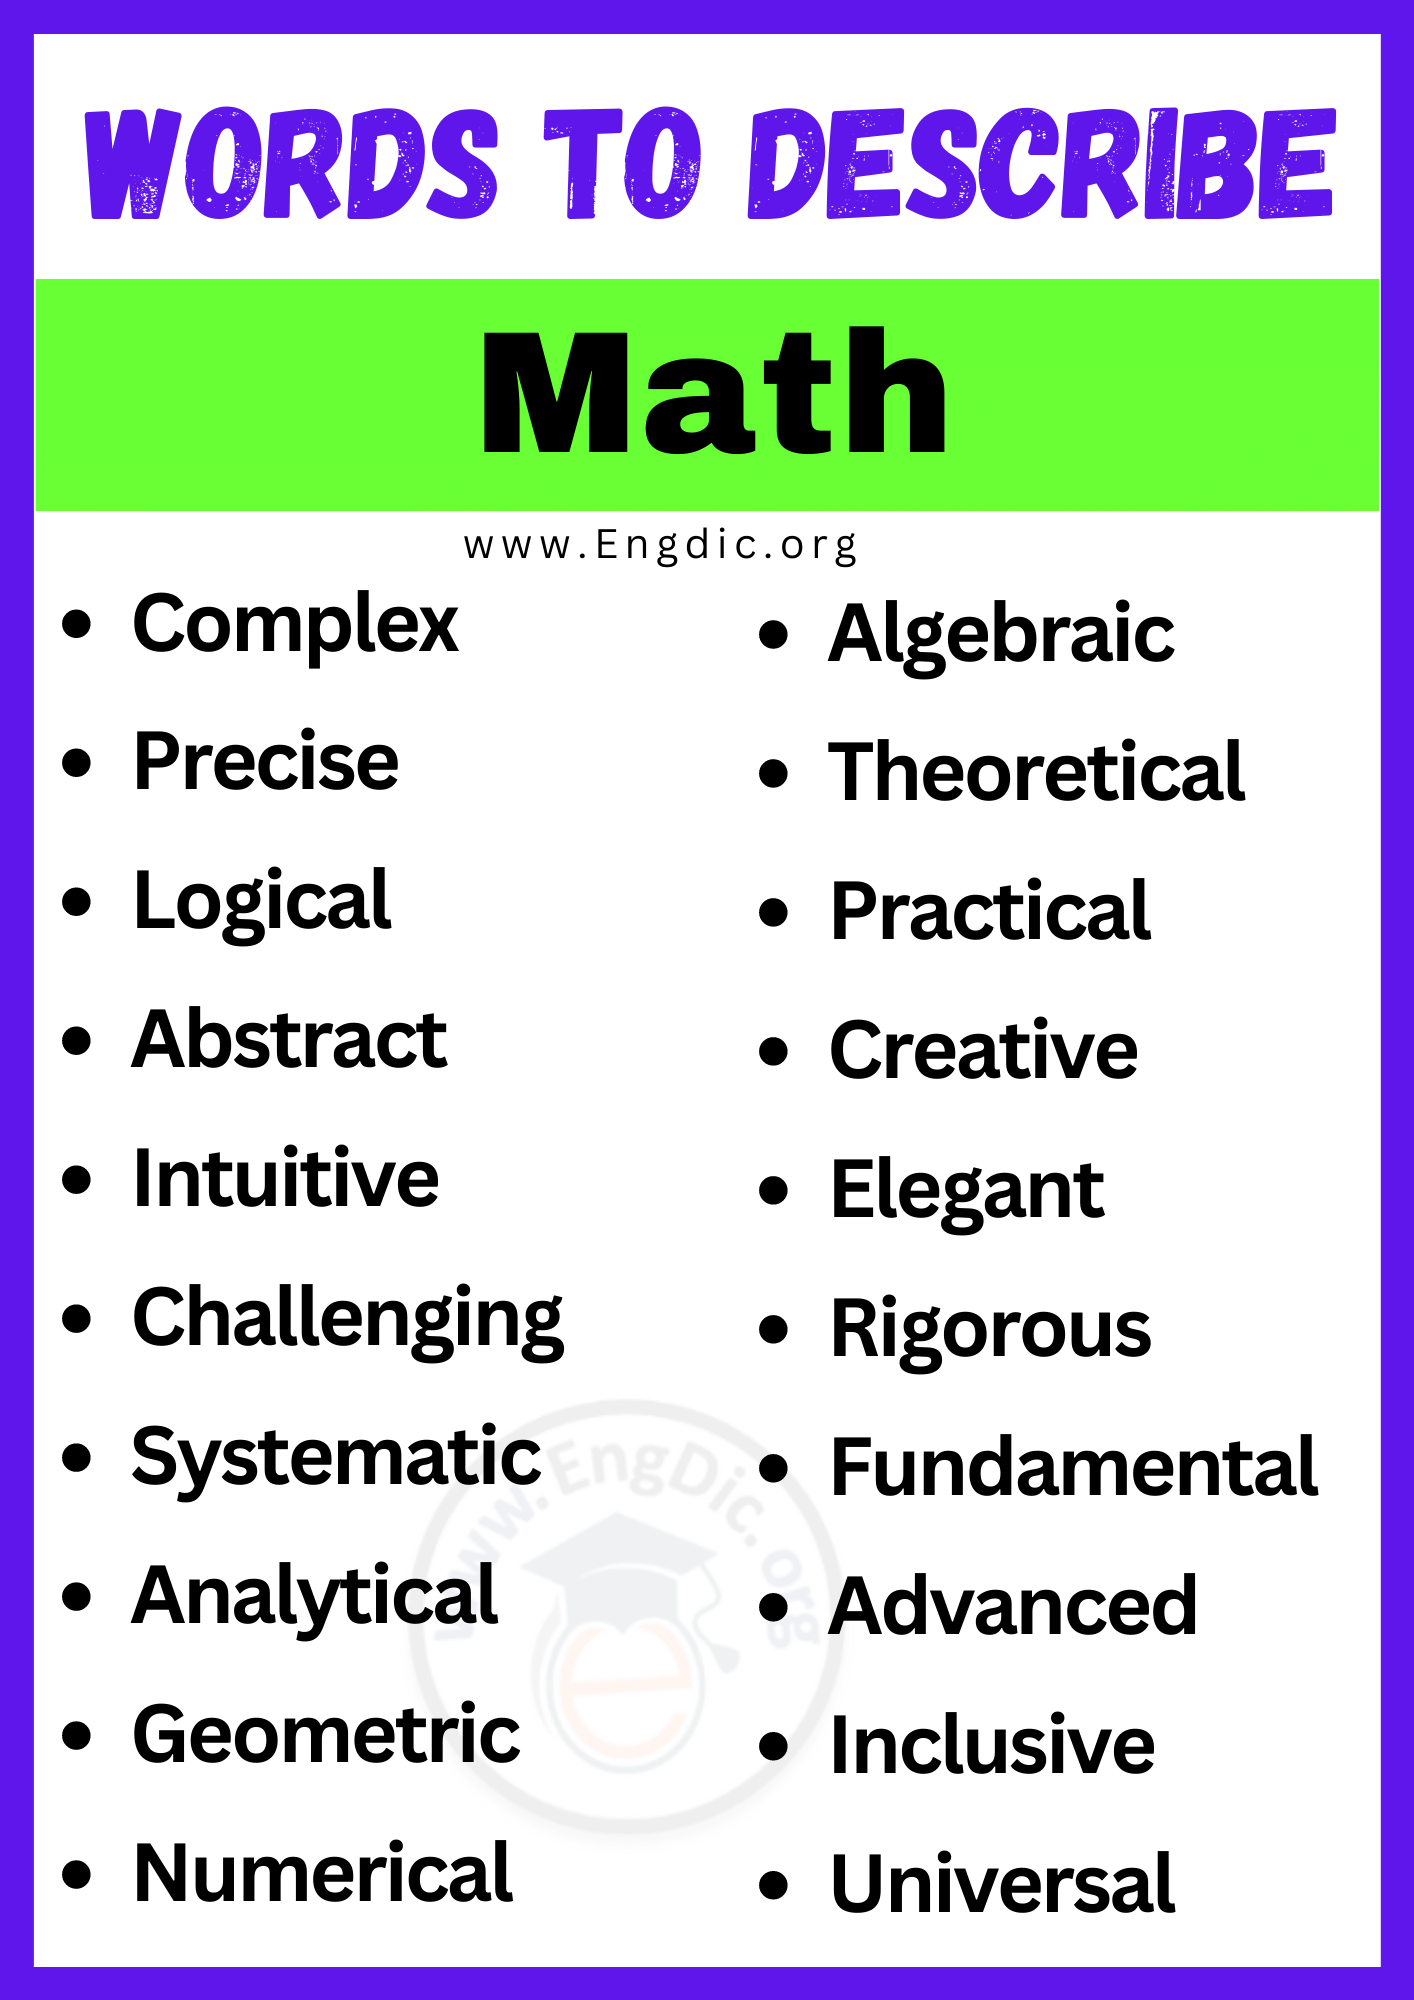 Words to Describe Math